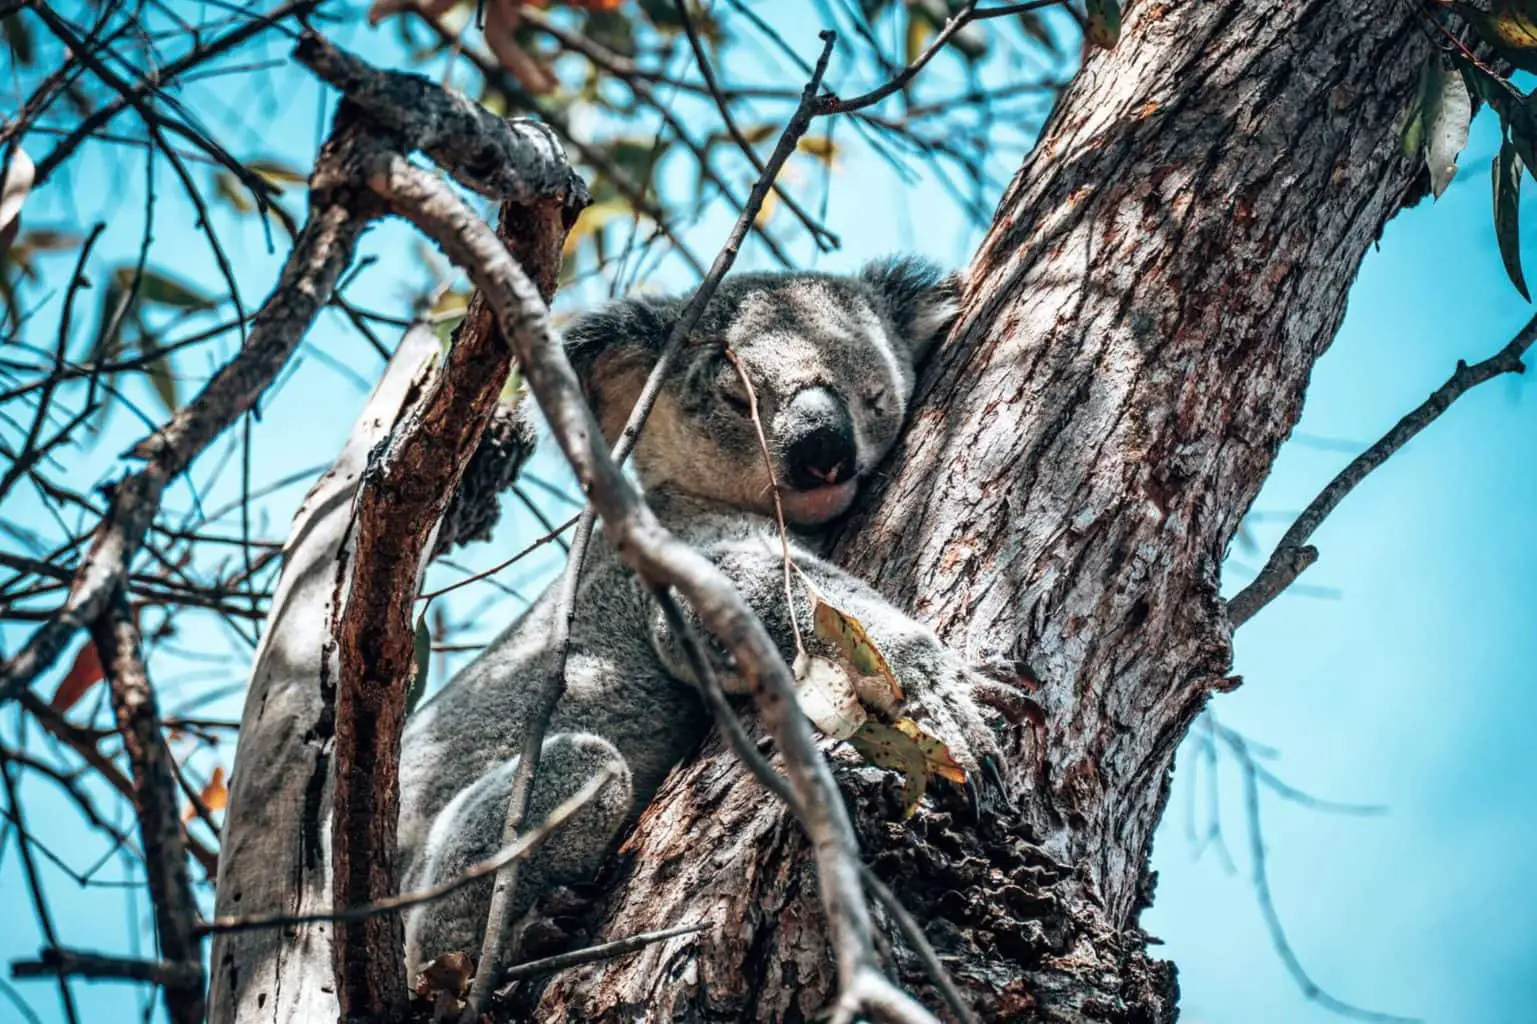 Koalas on the Fort Walk